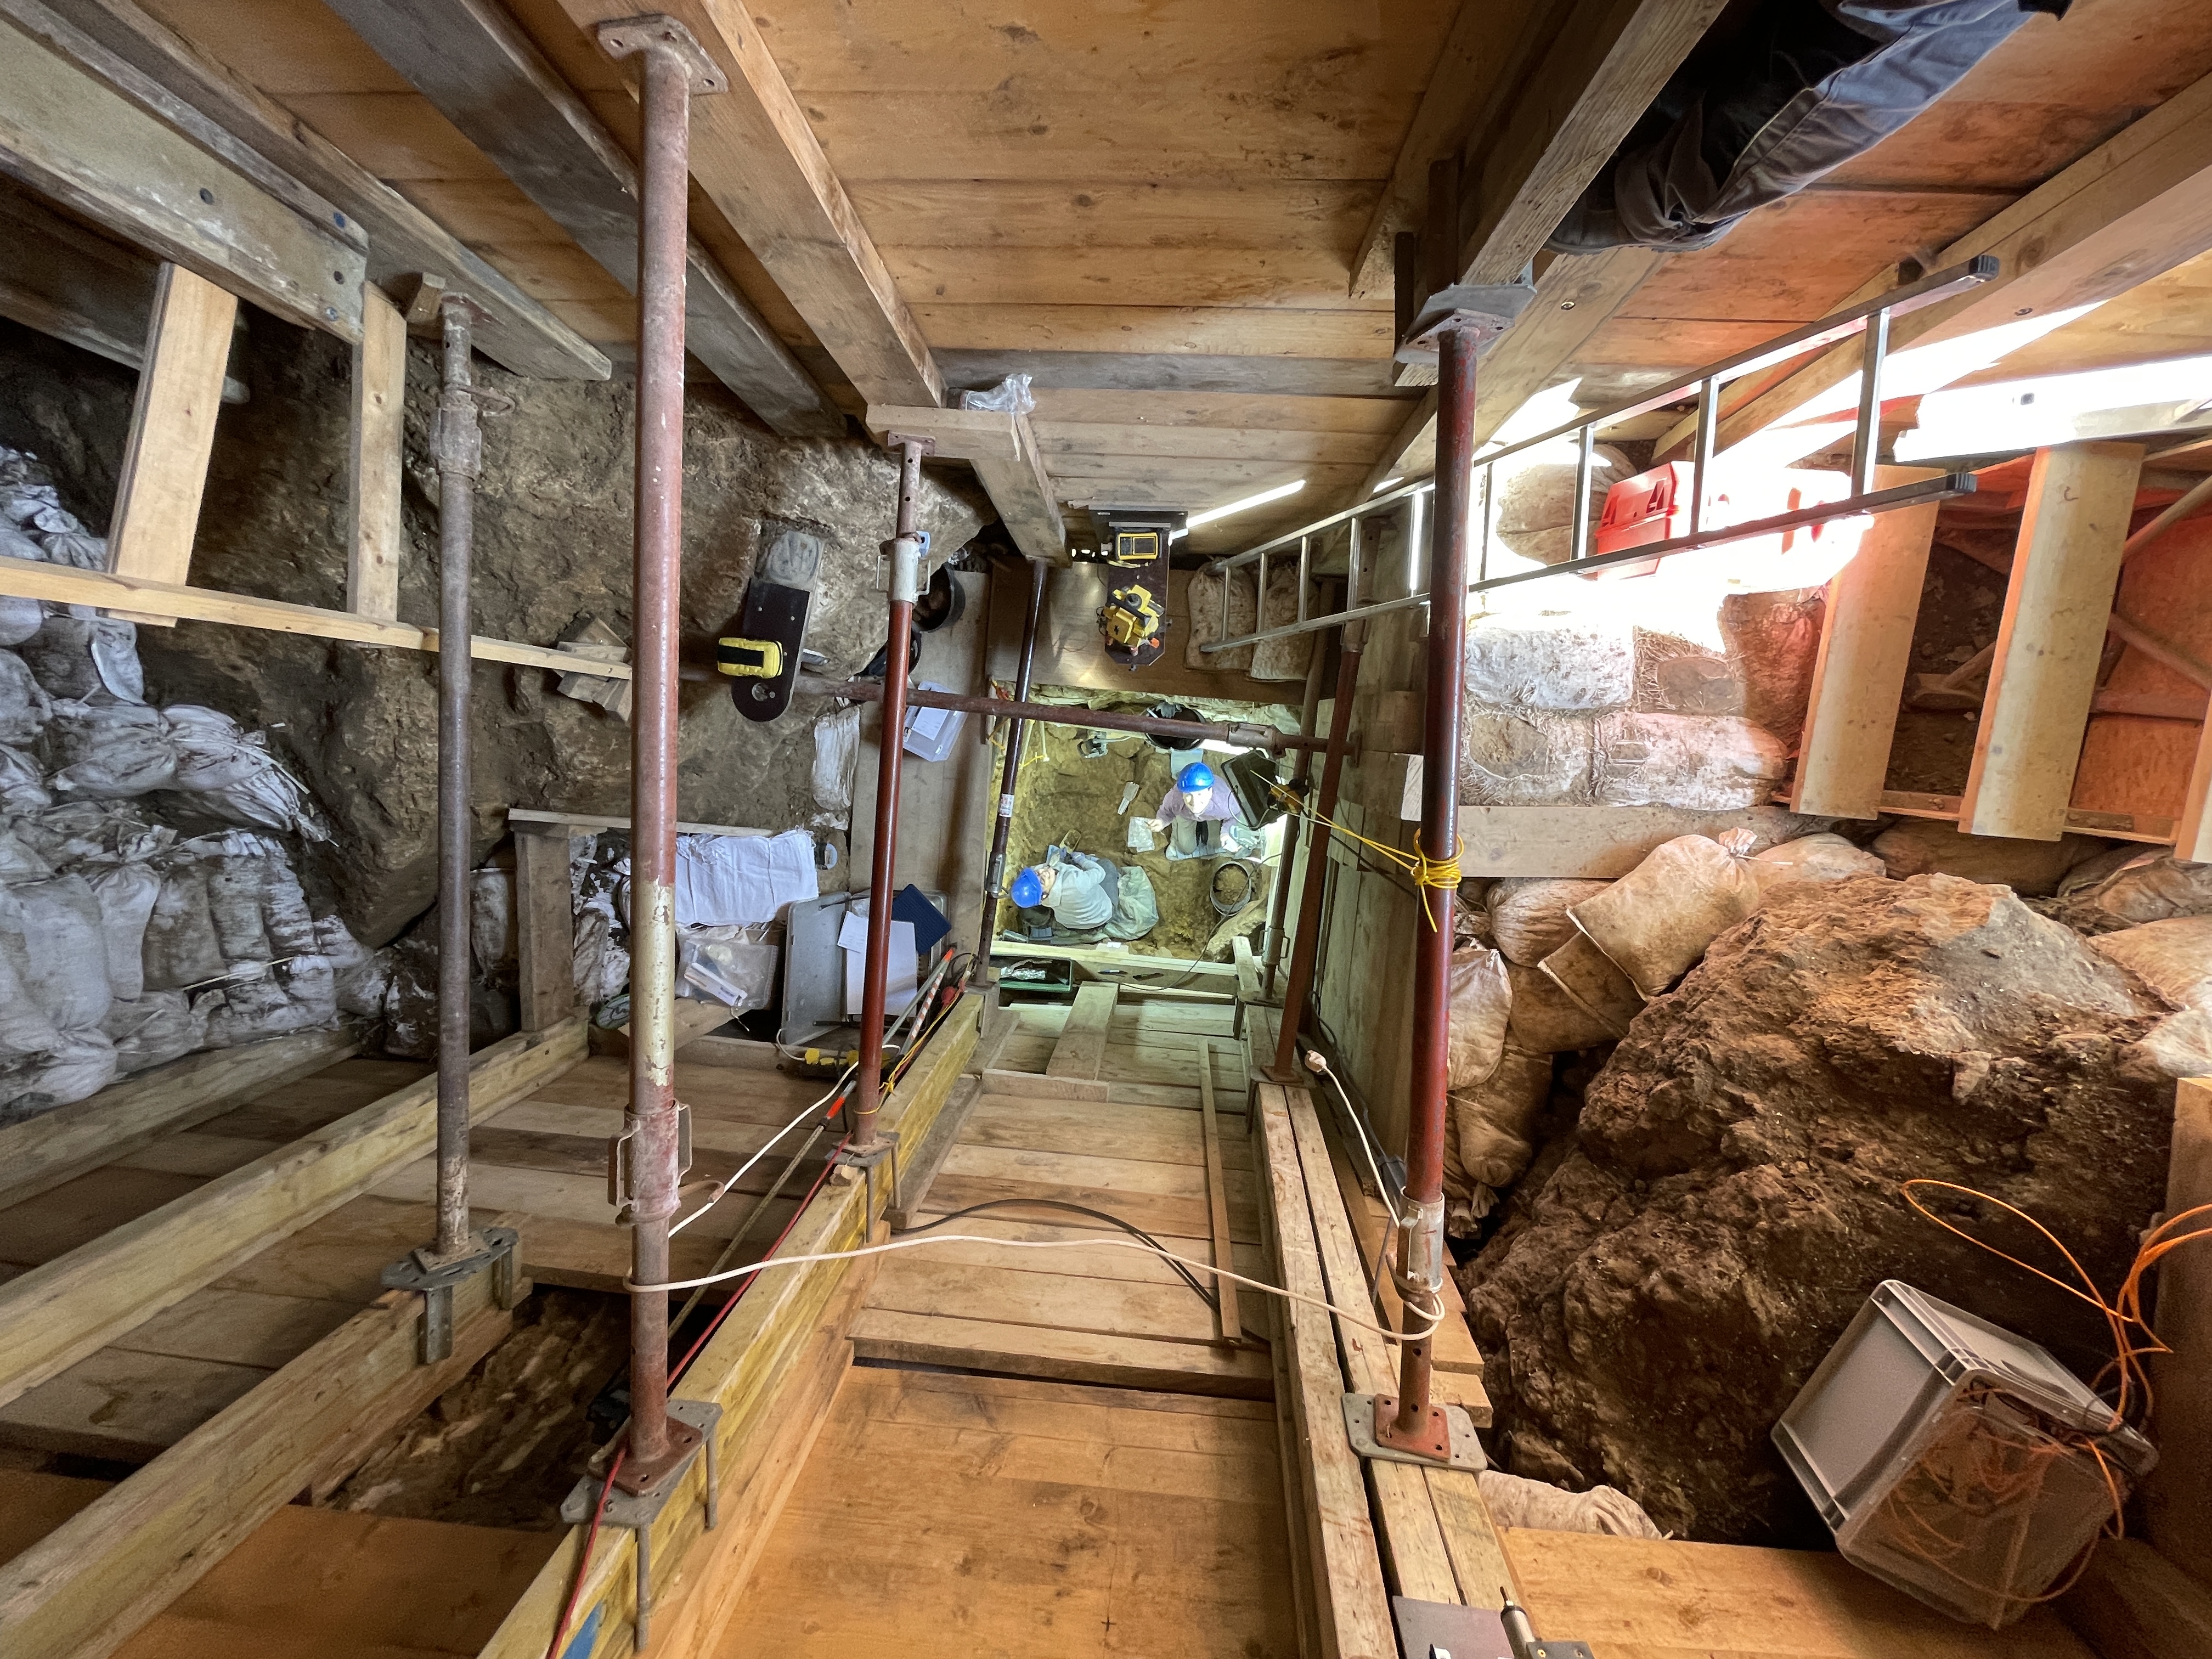 Das Foto zeigt den senkrechten Schacht der Ausgrabungen in der Ilsenhöhle in Ranis. Der Schacht ist komplett mit Holz ausgezimmert um ihn zu stützen. Man blickt 8 m nach unten, wo Archäologen die Ausgrabung durchführen.